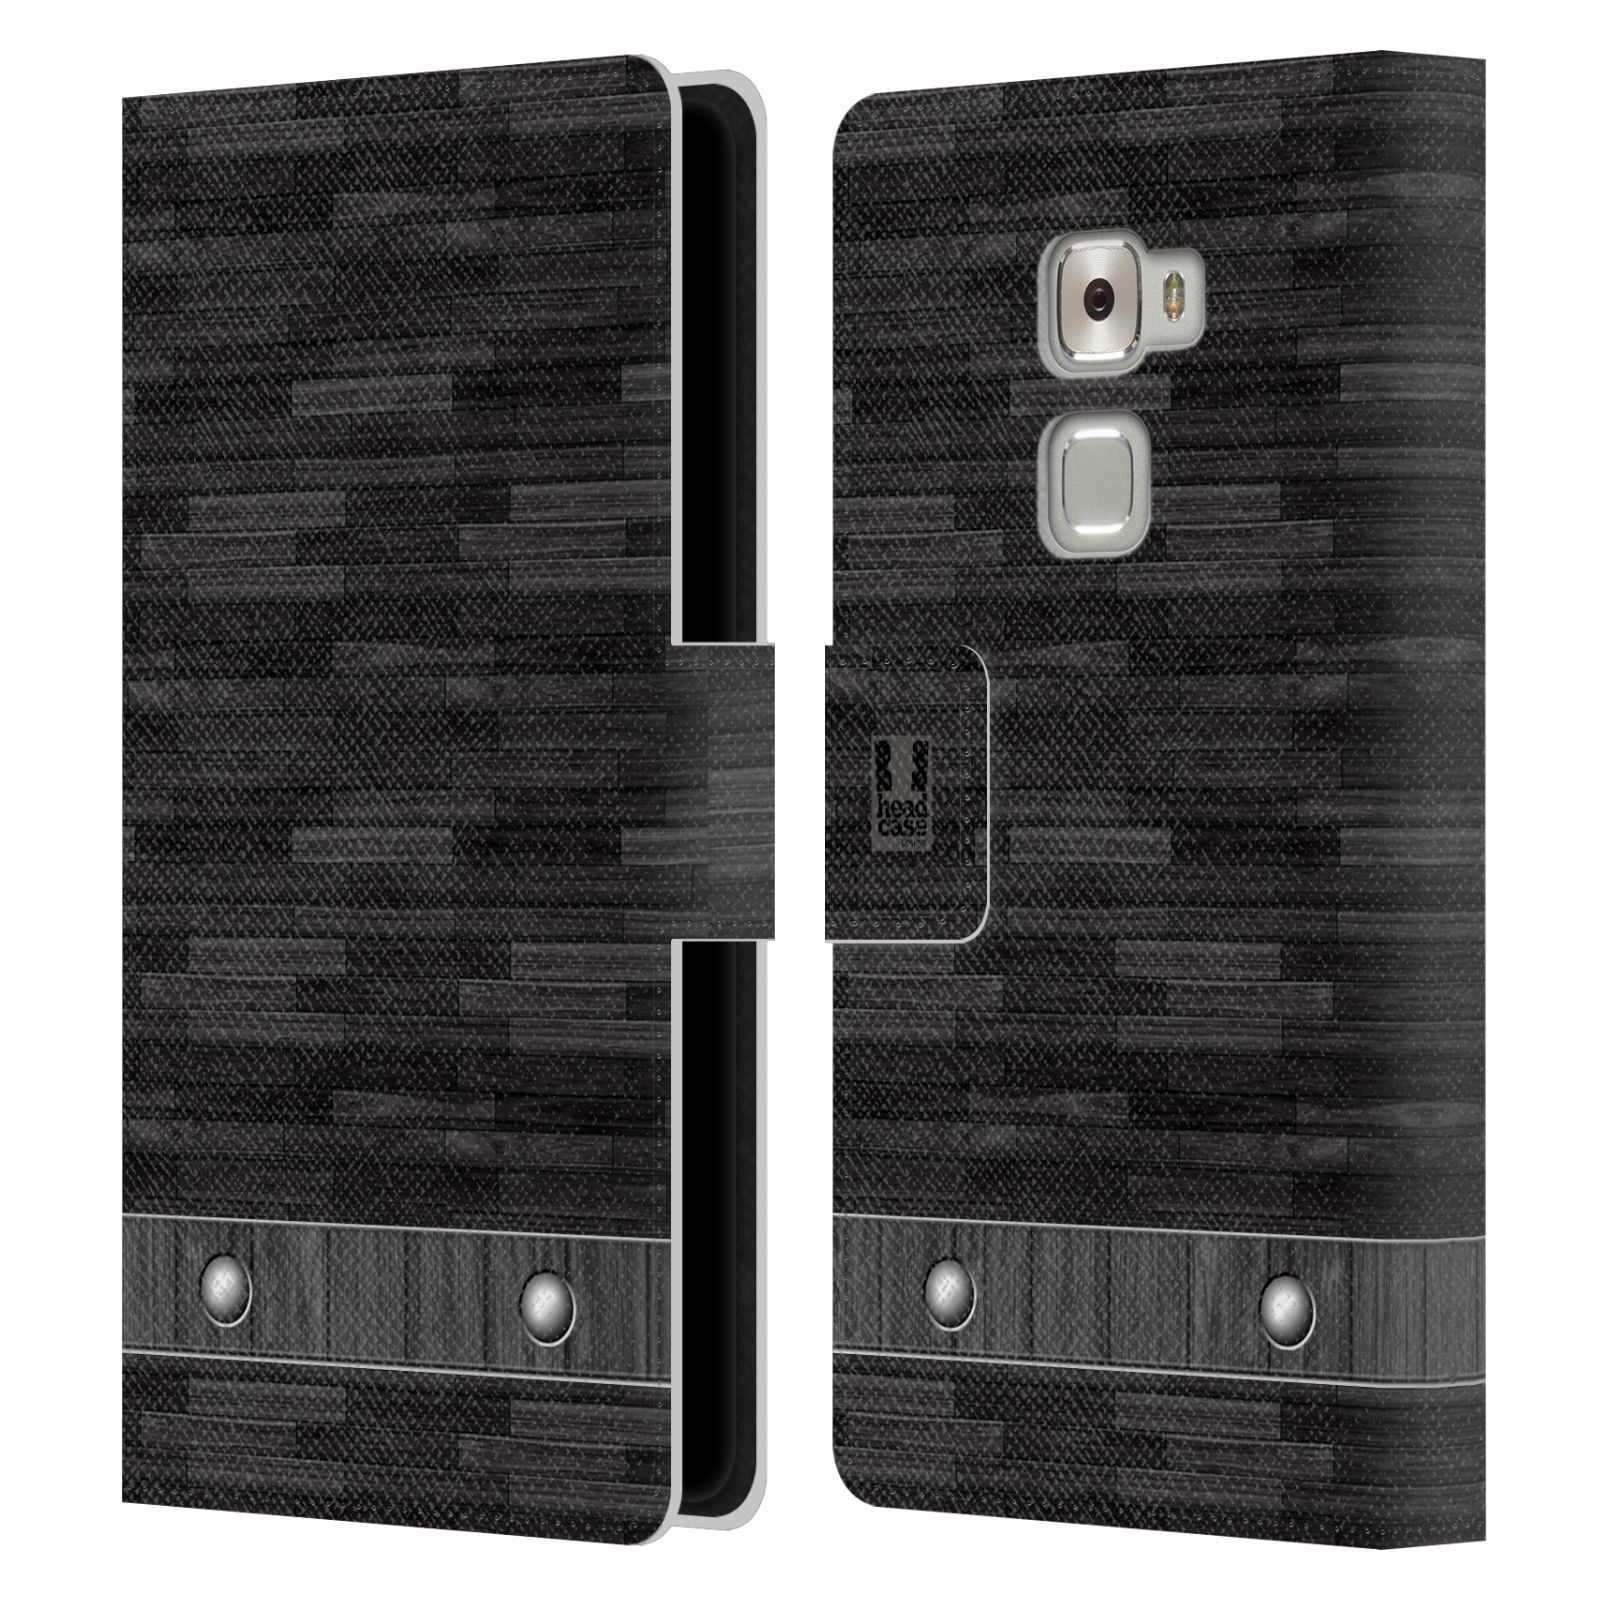 HEAD CASE Flipové pouzdro pro mobil Huawei MATE S stavební textury dřevo černá barva